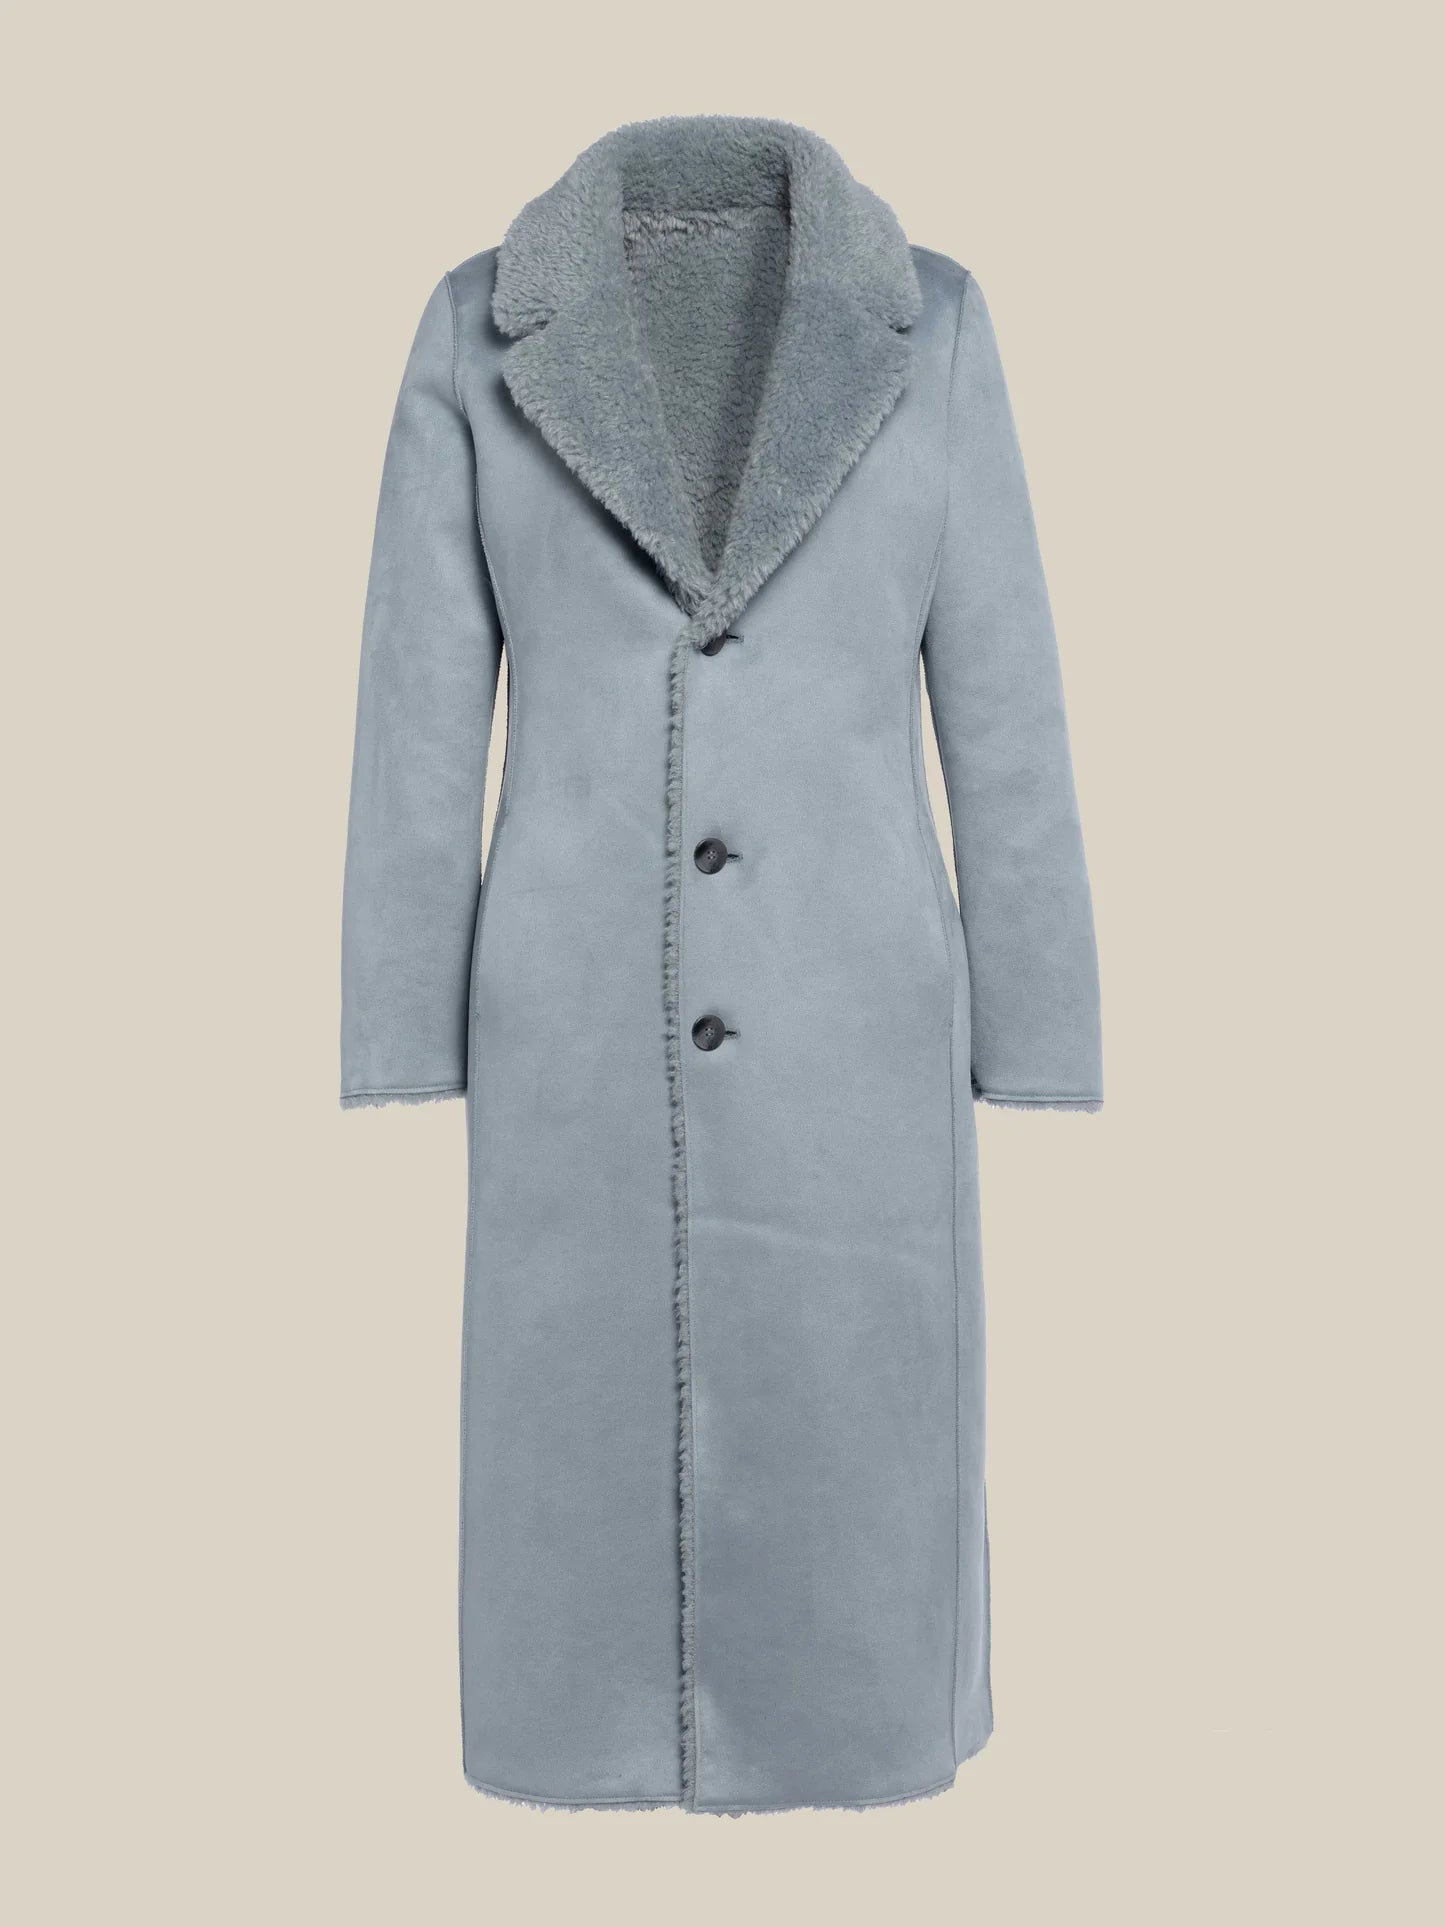 Vest Bleekblauw Beaumont ( Lyla Bm04060/1730 ) - Delaere Womenswear